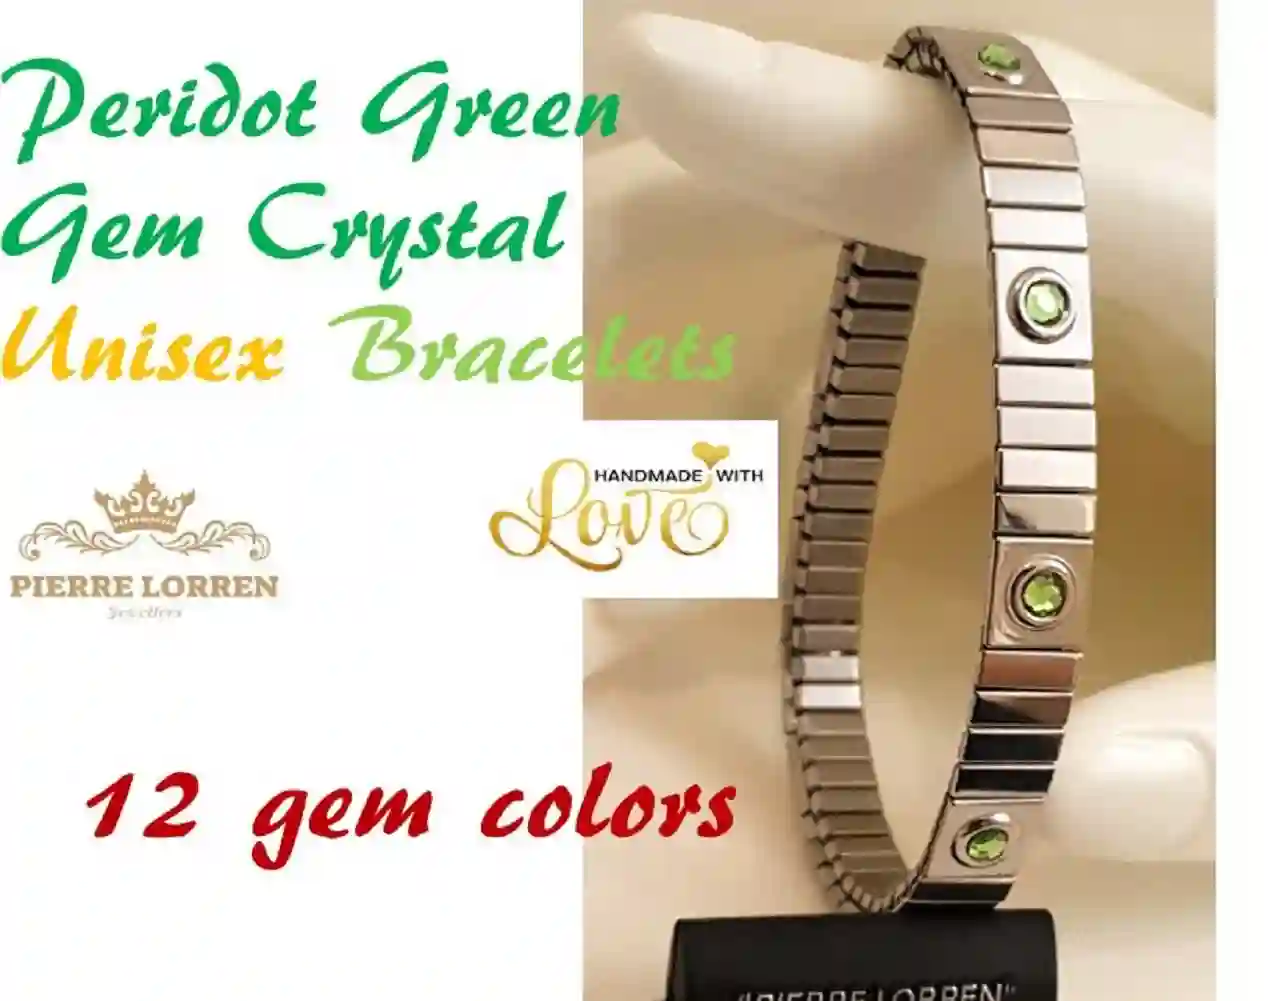 UNISEX Peridot SILVER Bracelet/August Birthstone Jewelry/Peridot Jewelry Bracelet him and her/Anniversary Gift for couple/Work Bracelet Gift 